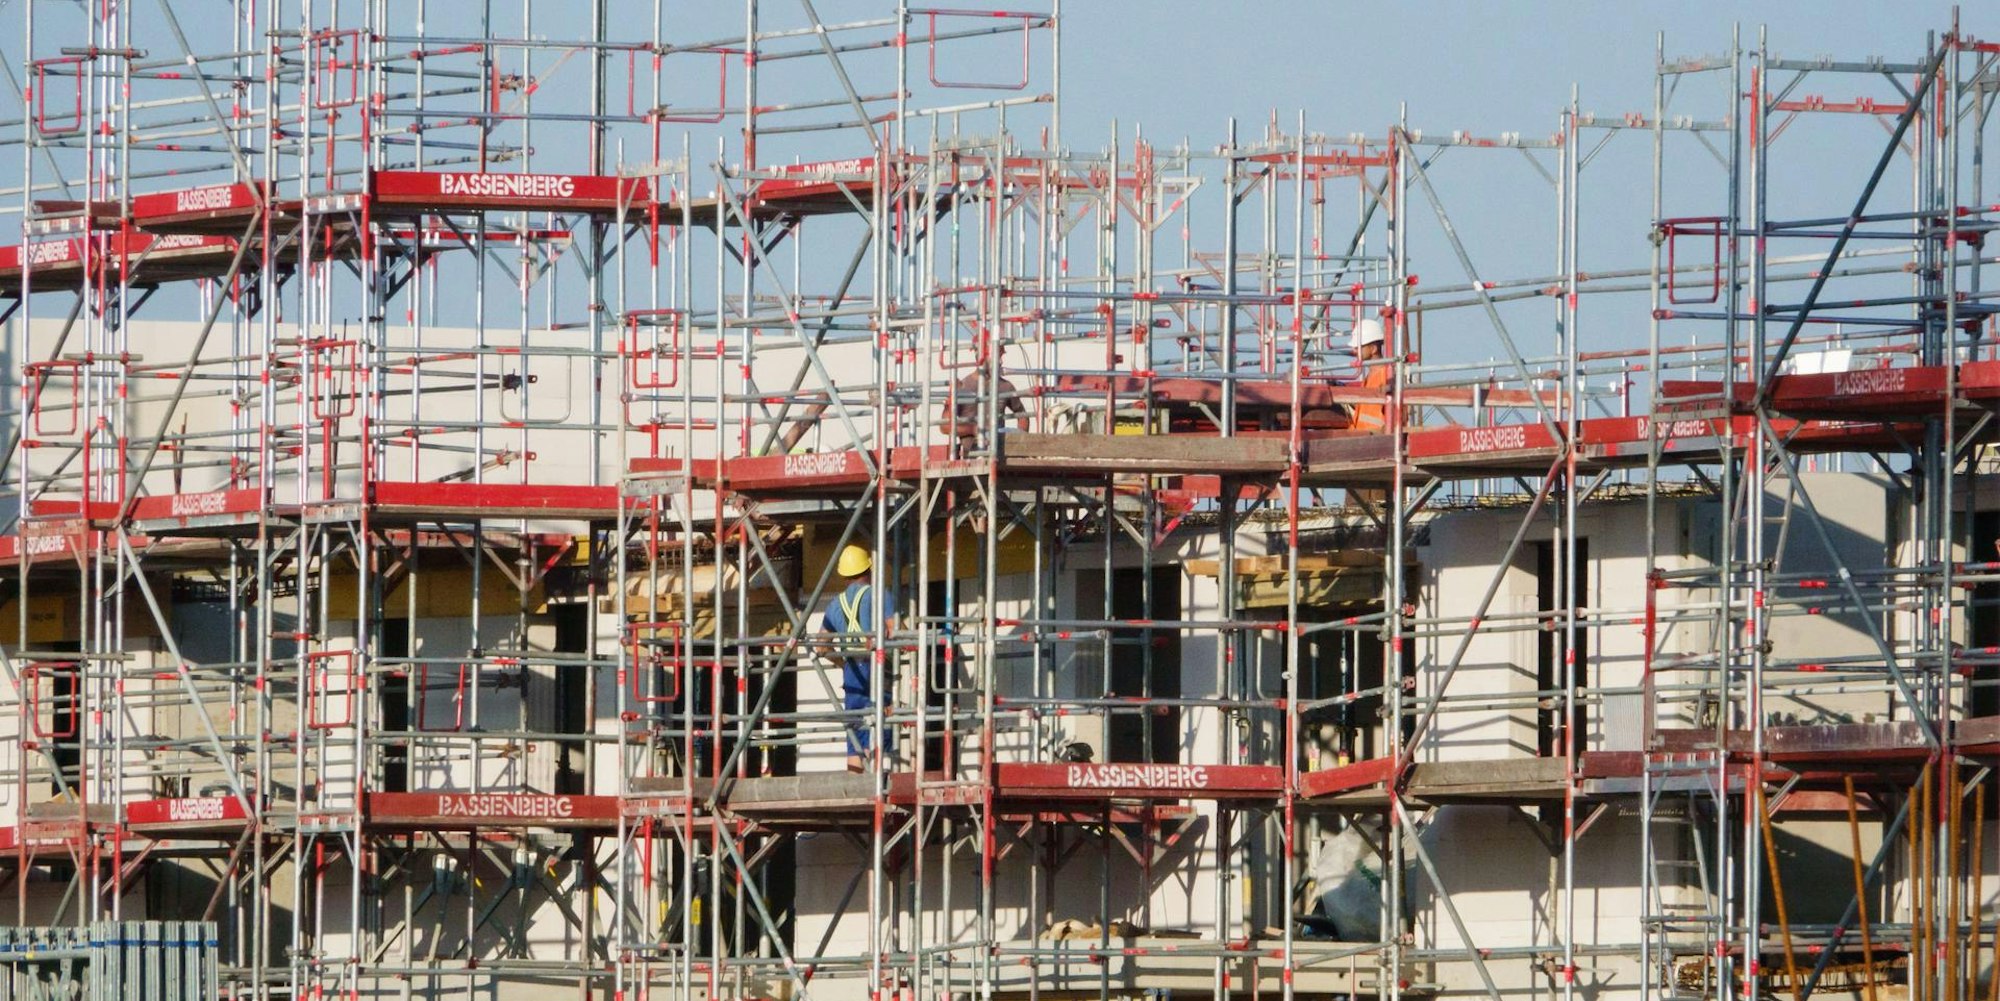 Das Bild zeigt die Baustelle eines mehrstöckigen Gebäudes.